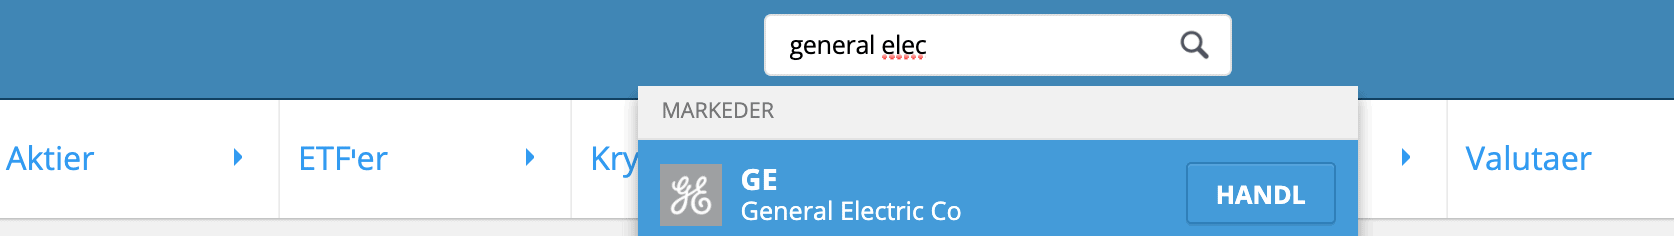 Soeg General Electric Aktier